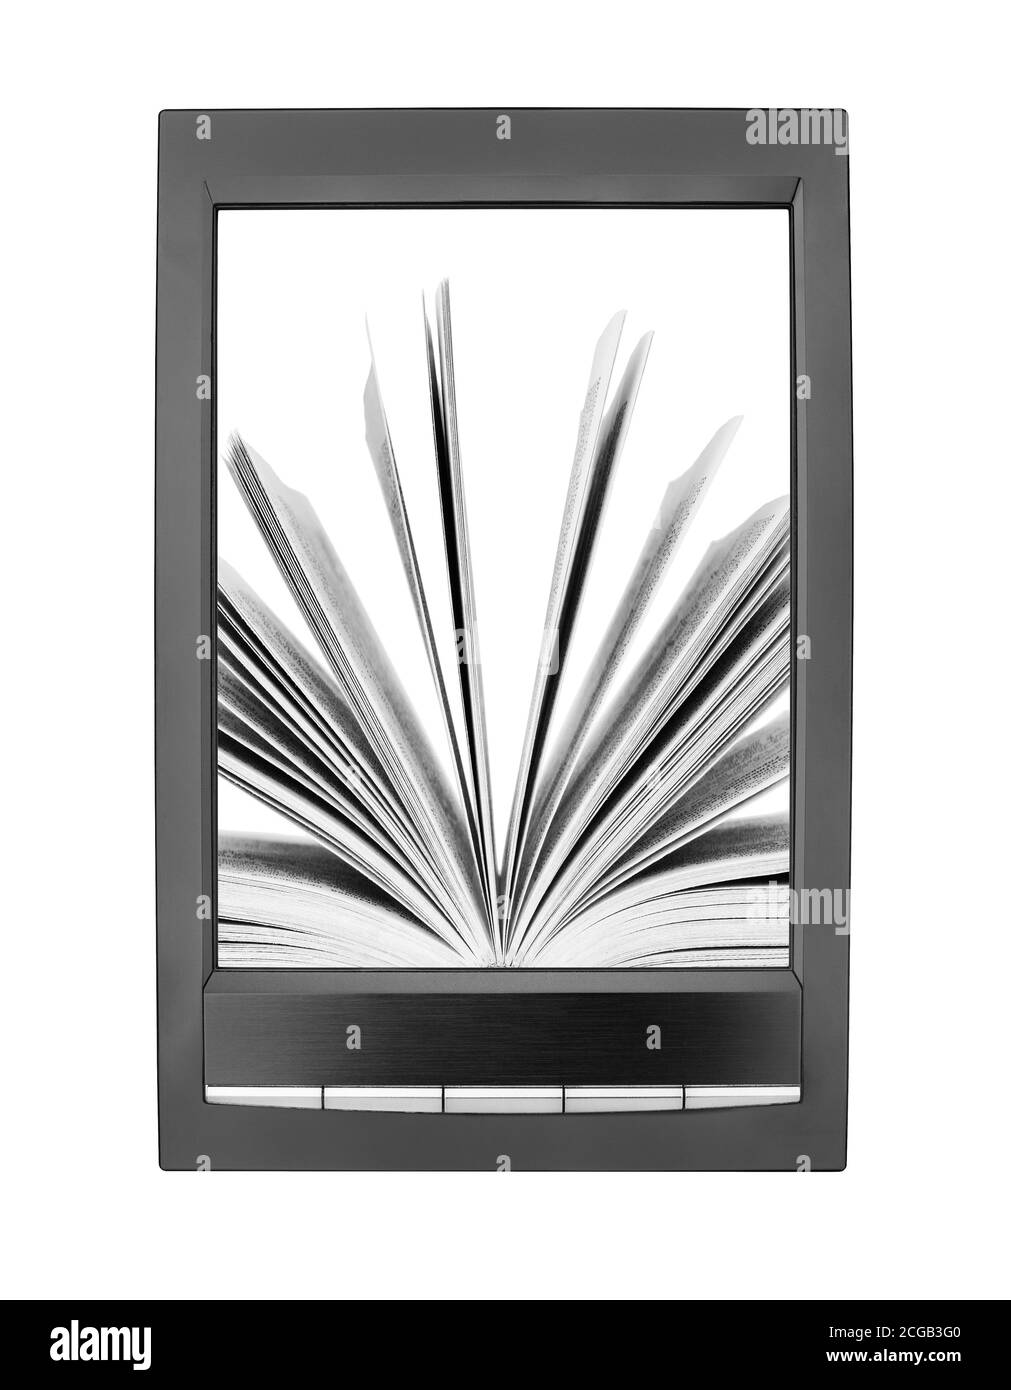 Öffnen Sie Papier Buch Umblättern Seiten auf elektronische Buch-Display weißen Hintergrund isoliert Nahaufnahme, Lehrbuch Umblättern Seiten auf E-Book-Bildschirm, E-Reader Tablet Stockfoto